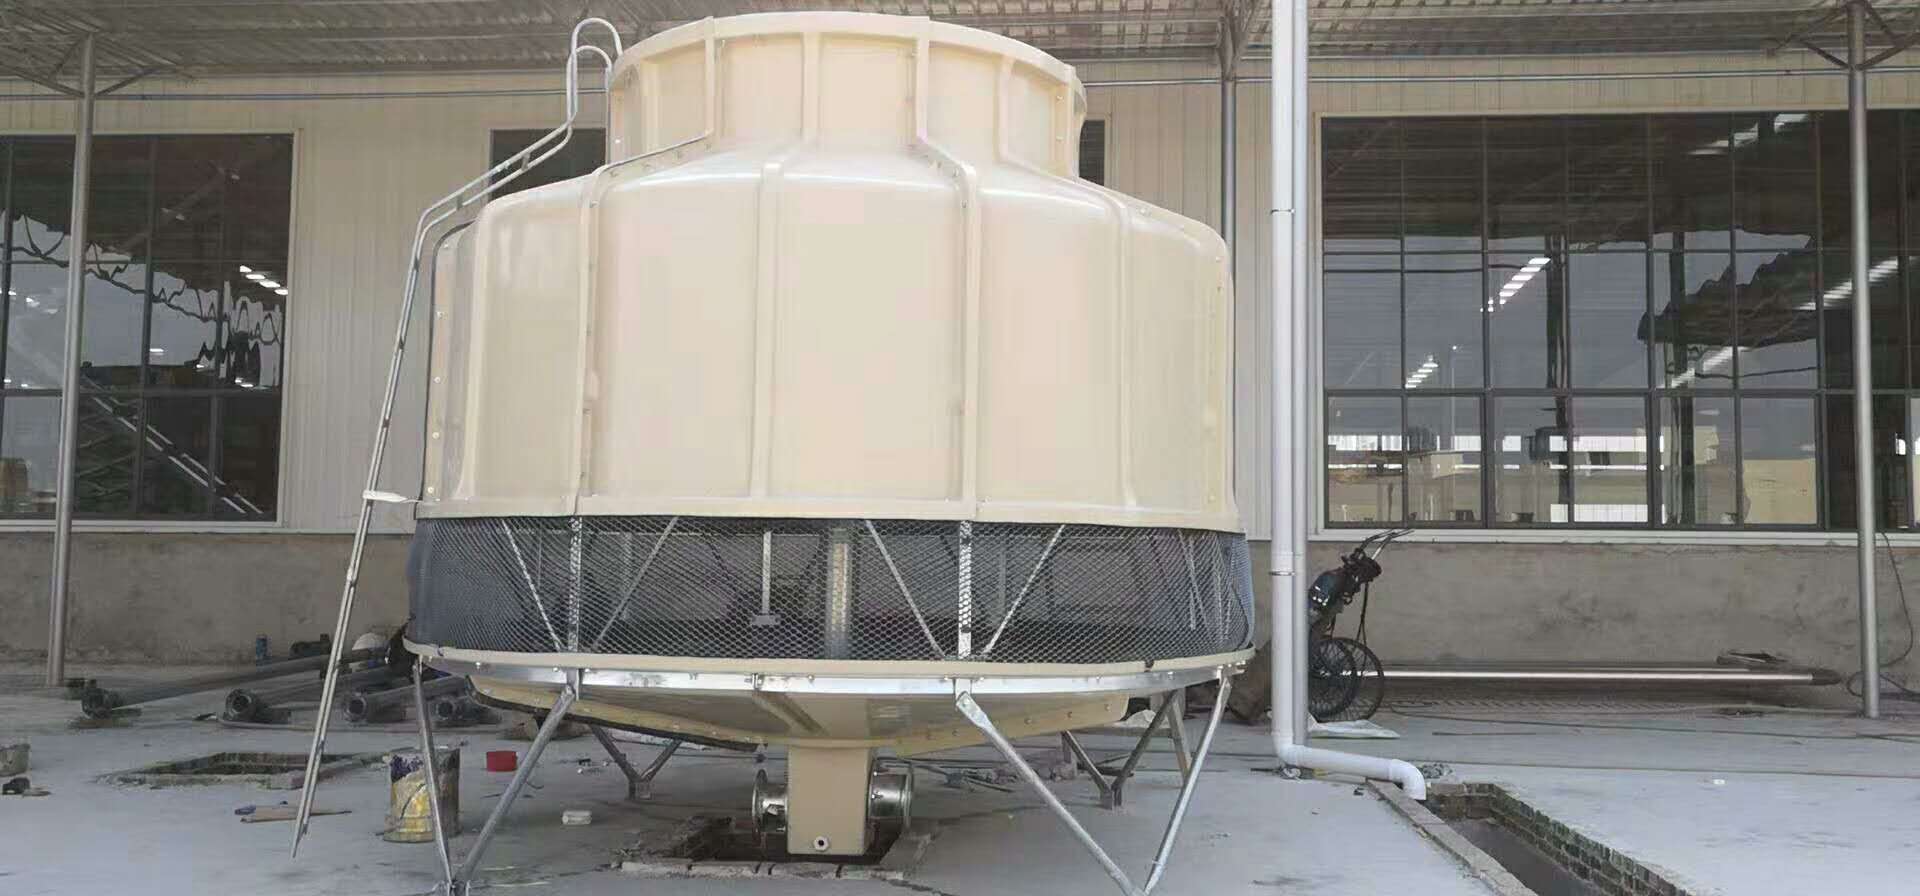 冷却塔公司/圆型冷却塔/150吨 供应广西冷却塔空调注塑机 供应广西冷却塔空调注塑机专用凉塔